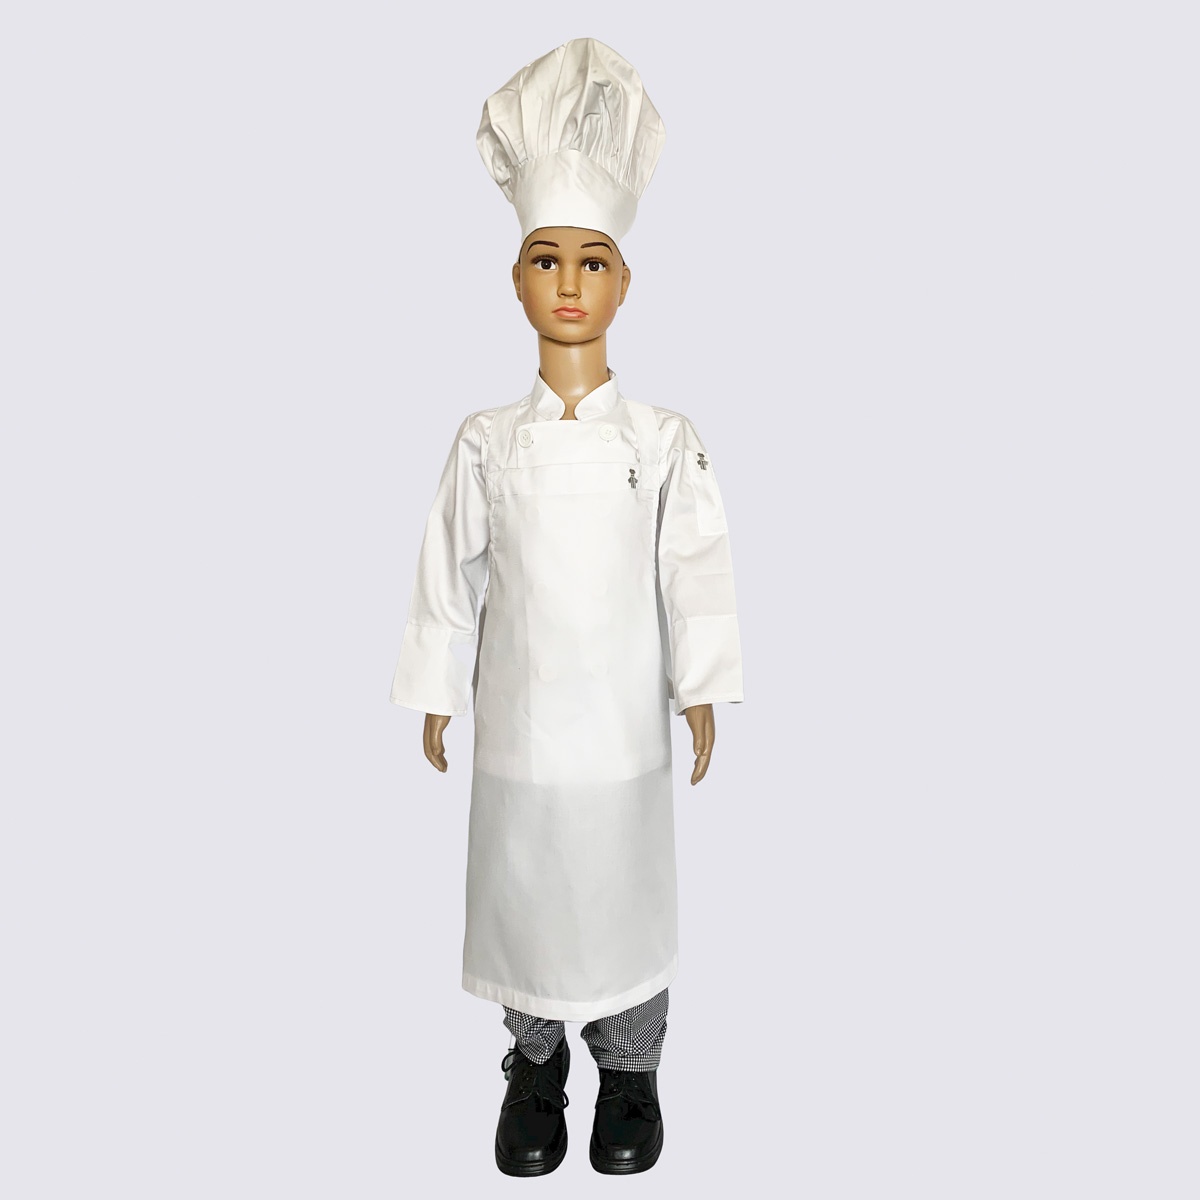 Junior Chef Complete Uniform Set (Jacket with White Buttons + Pant + Apron + Hat)